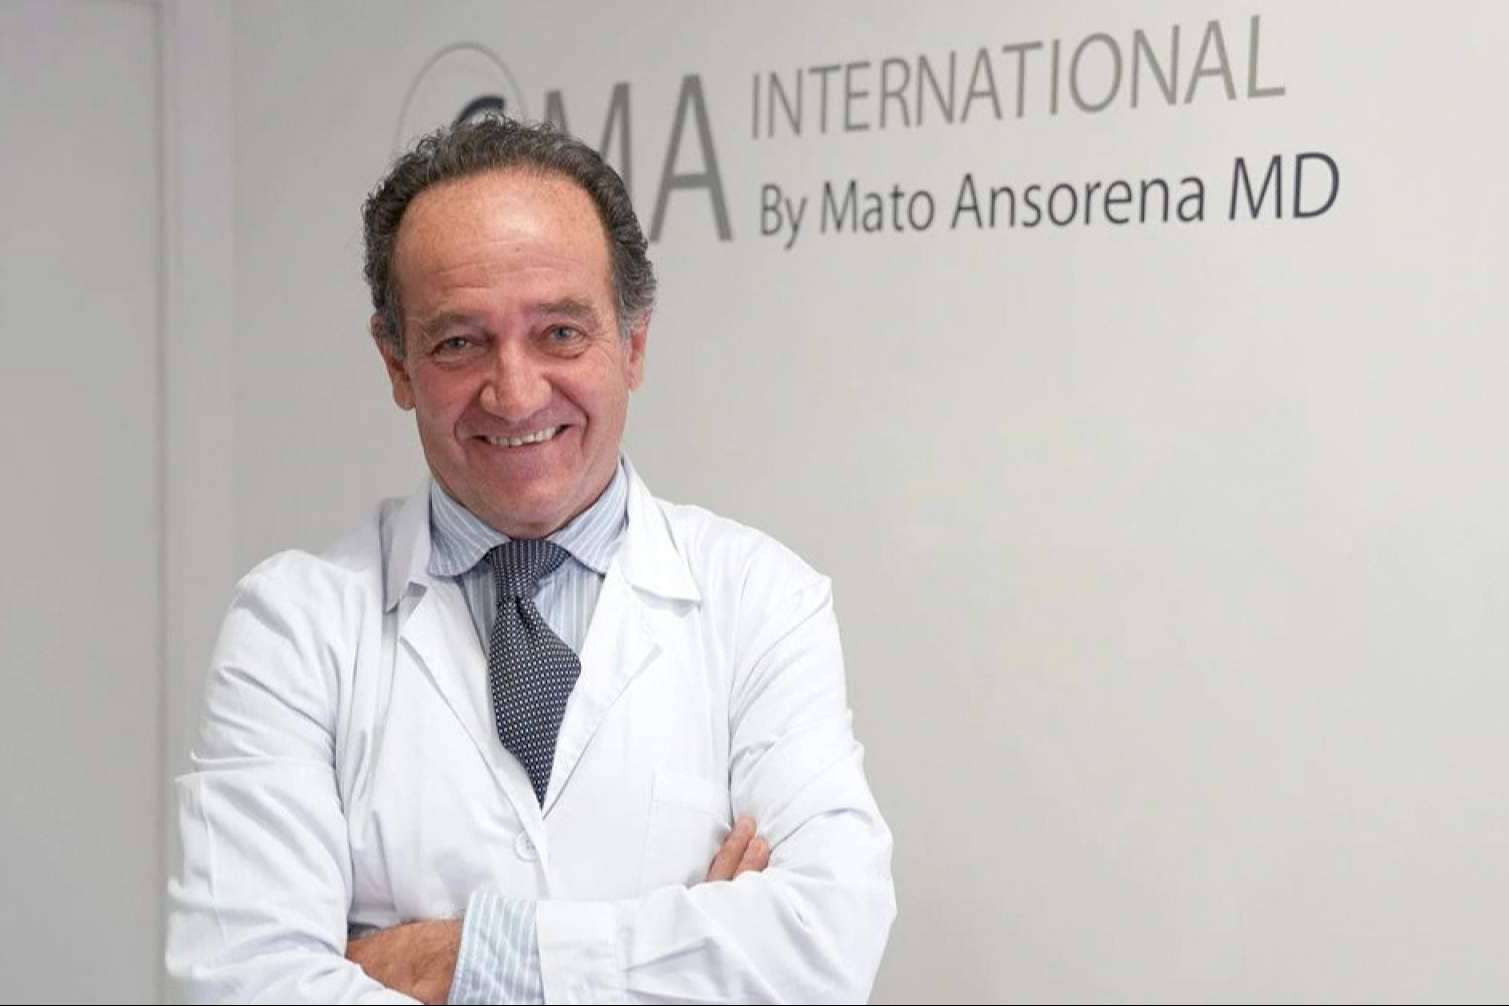  Clínicas Mato Ansorena garantiza naturalidad, seguridad y experiencia en los tratamientos de medicina y cirugía estética 